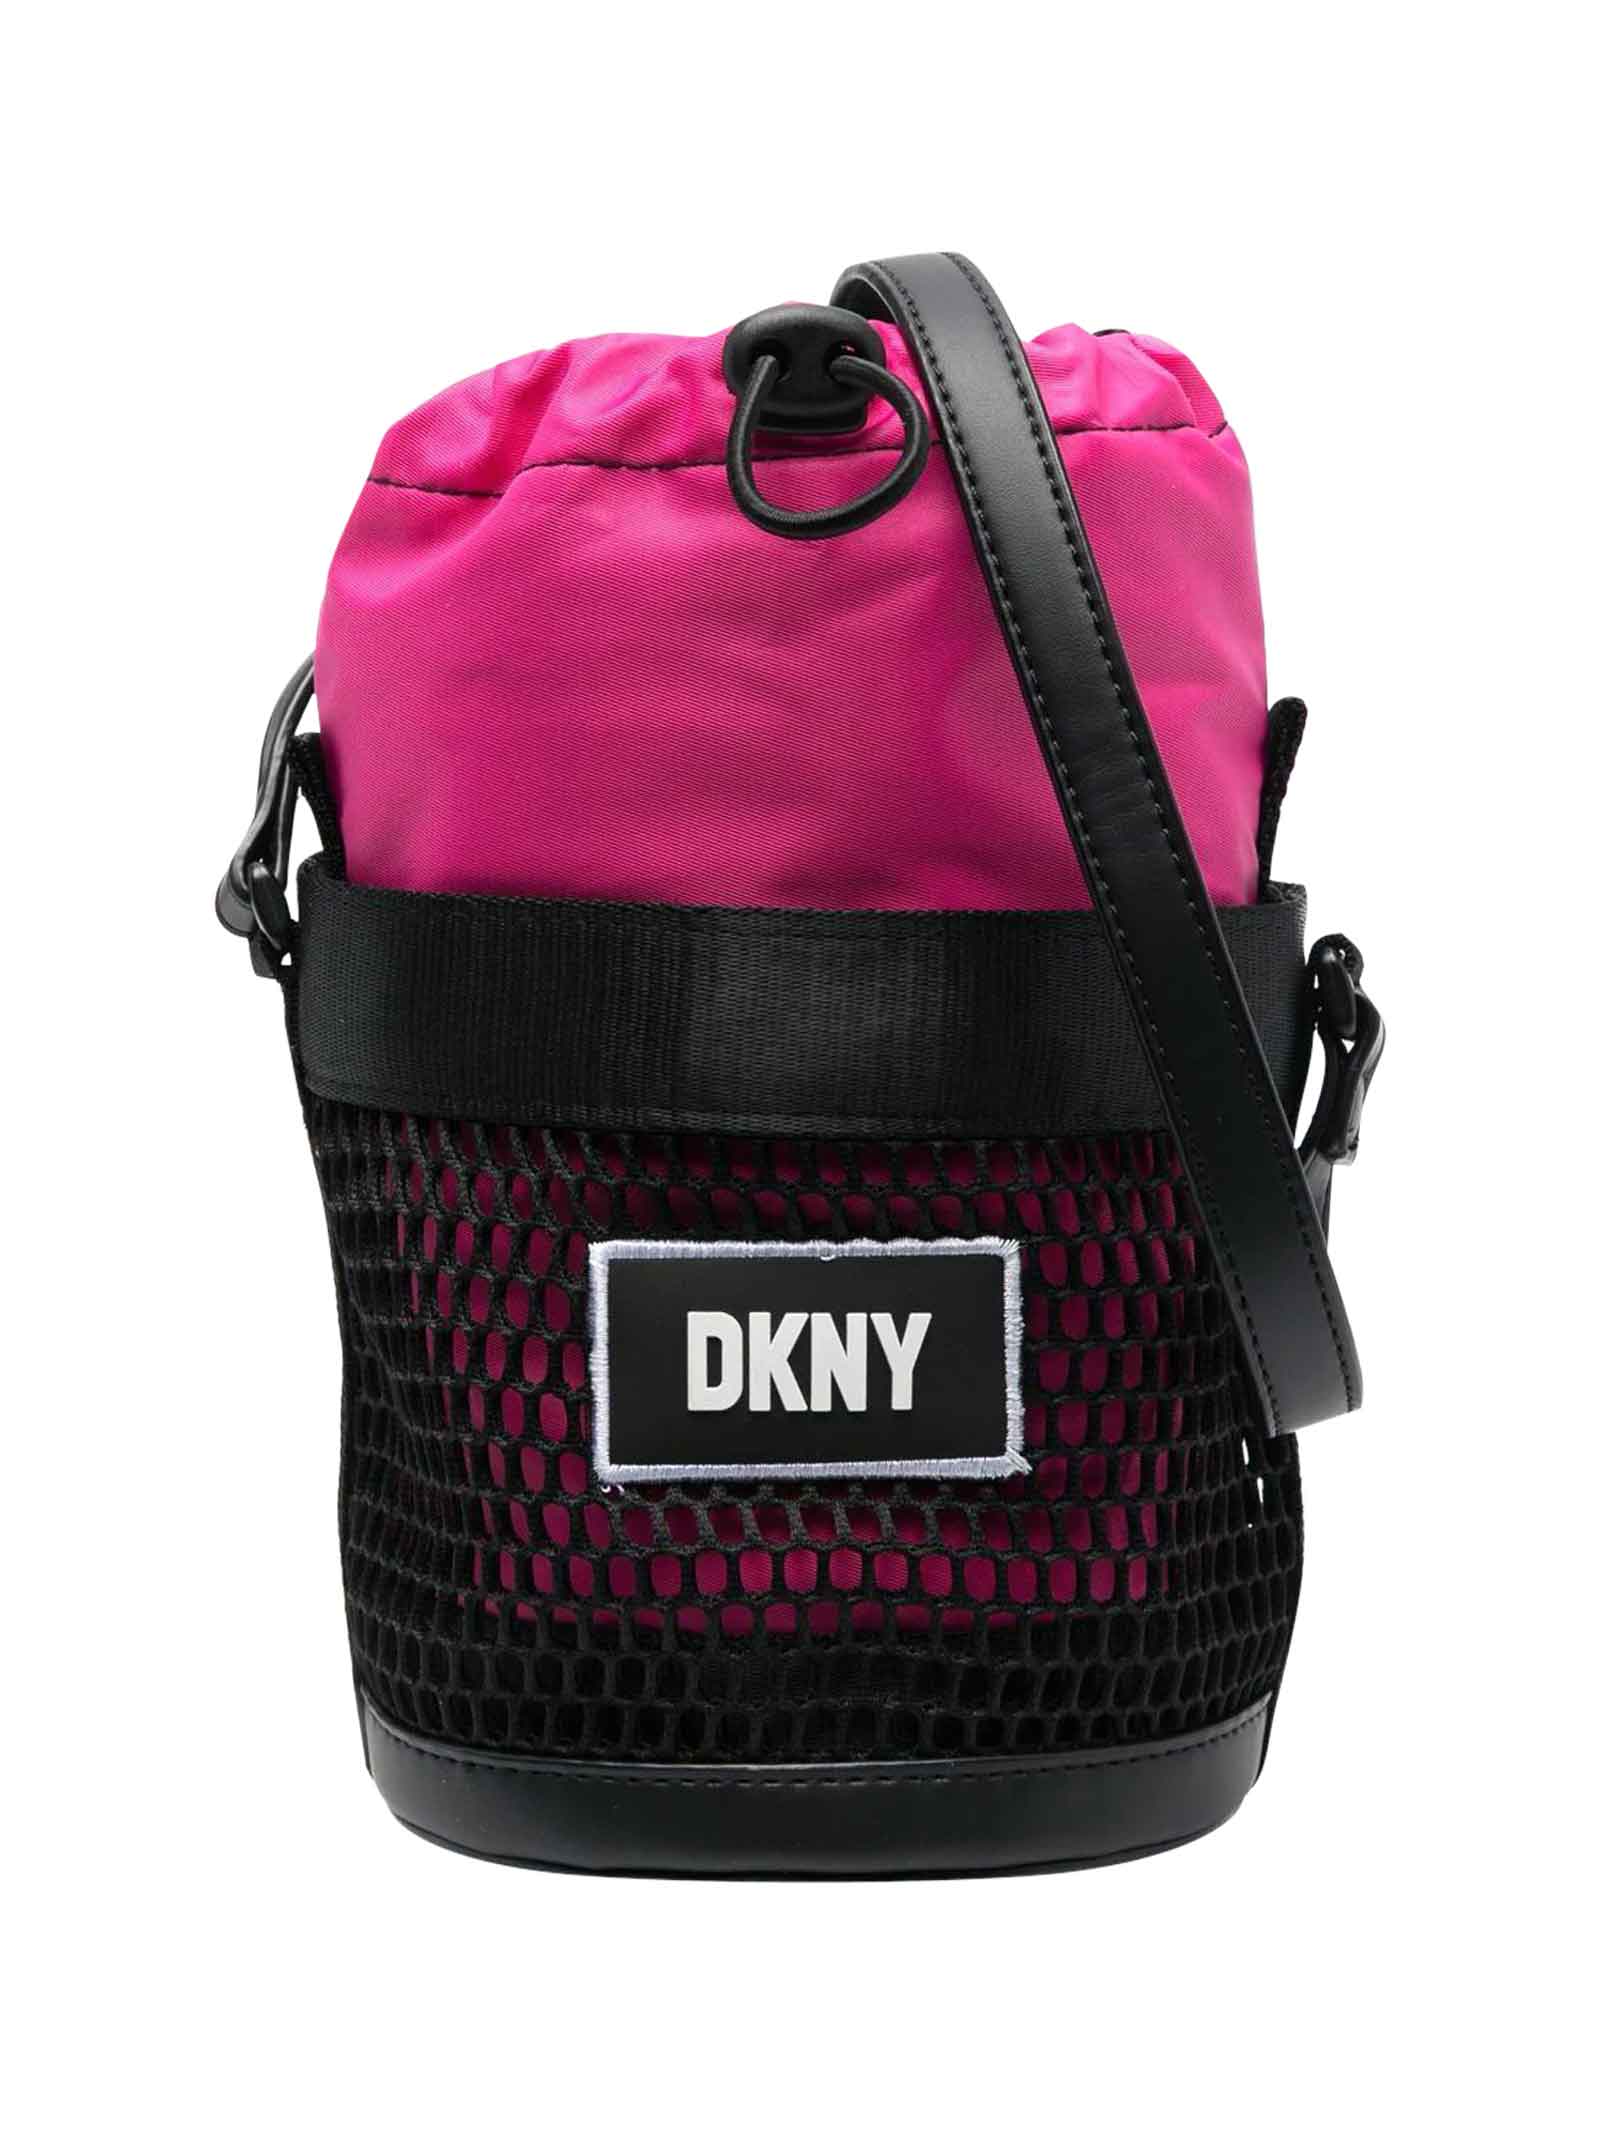 DKNY Black And Magenta Shoulder Bag Unisex